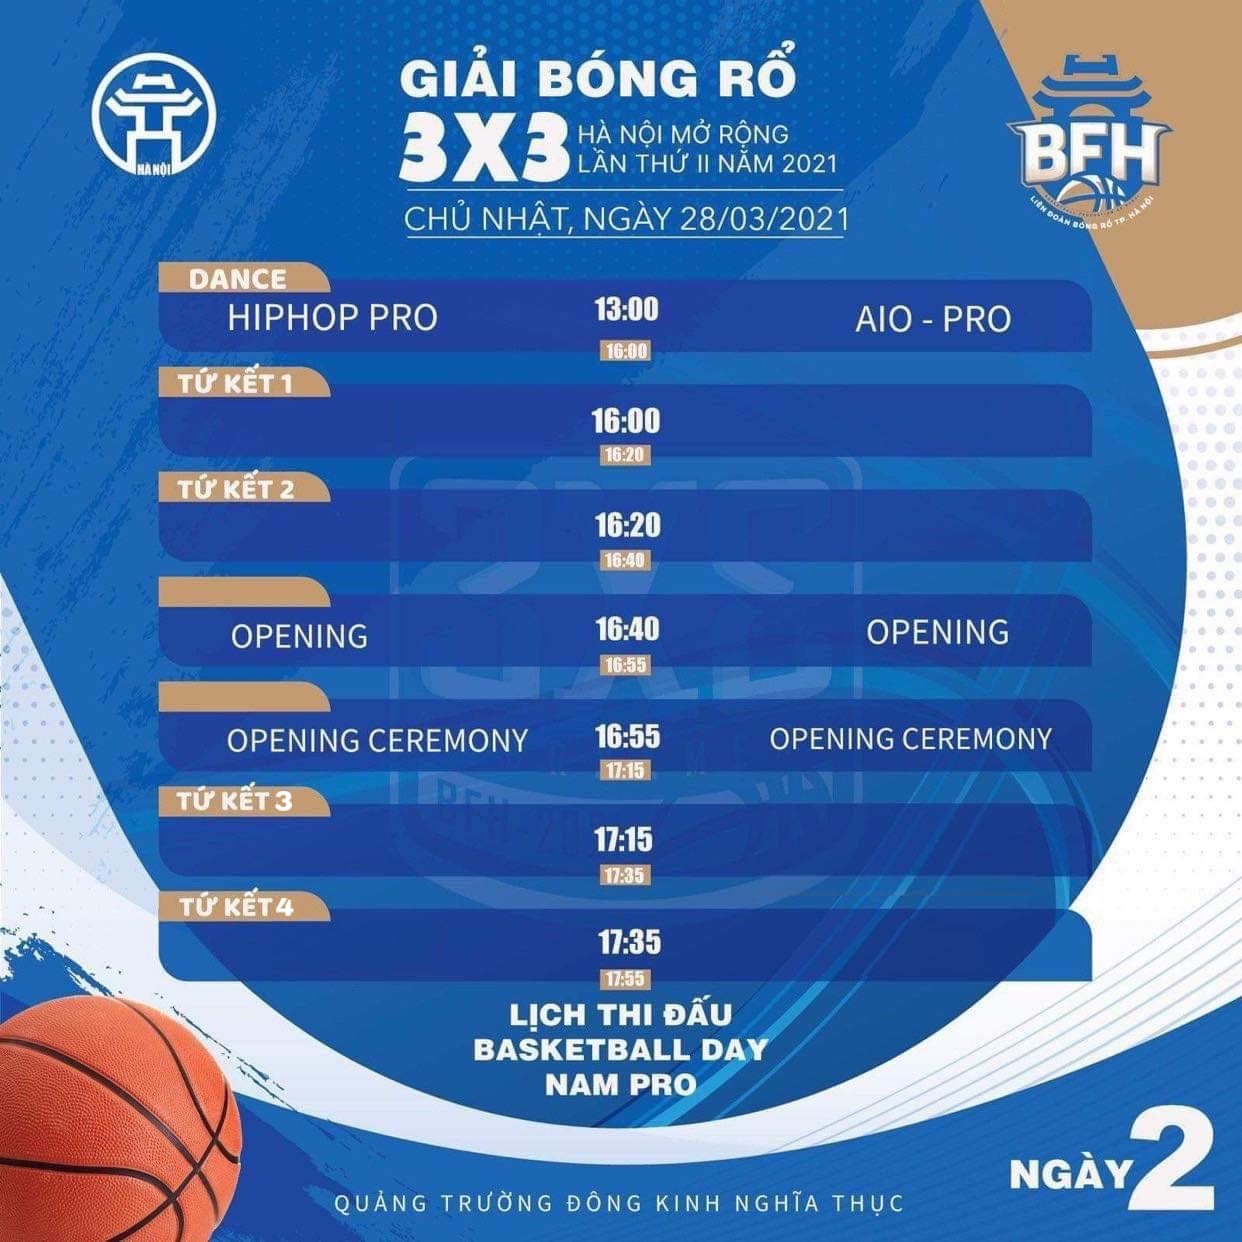 Lịch thi đấu giải bóng rổ 3x3 Hà Nội mở rộng lần 2 năm 2021 - Ảnh 8